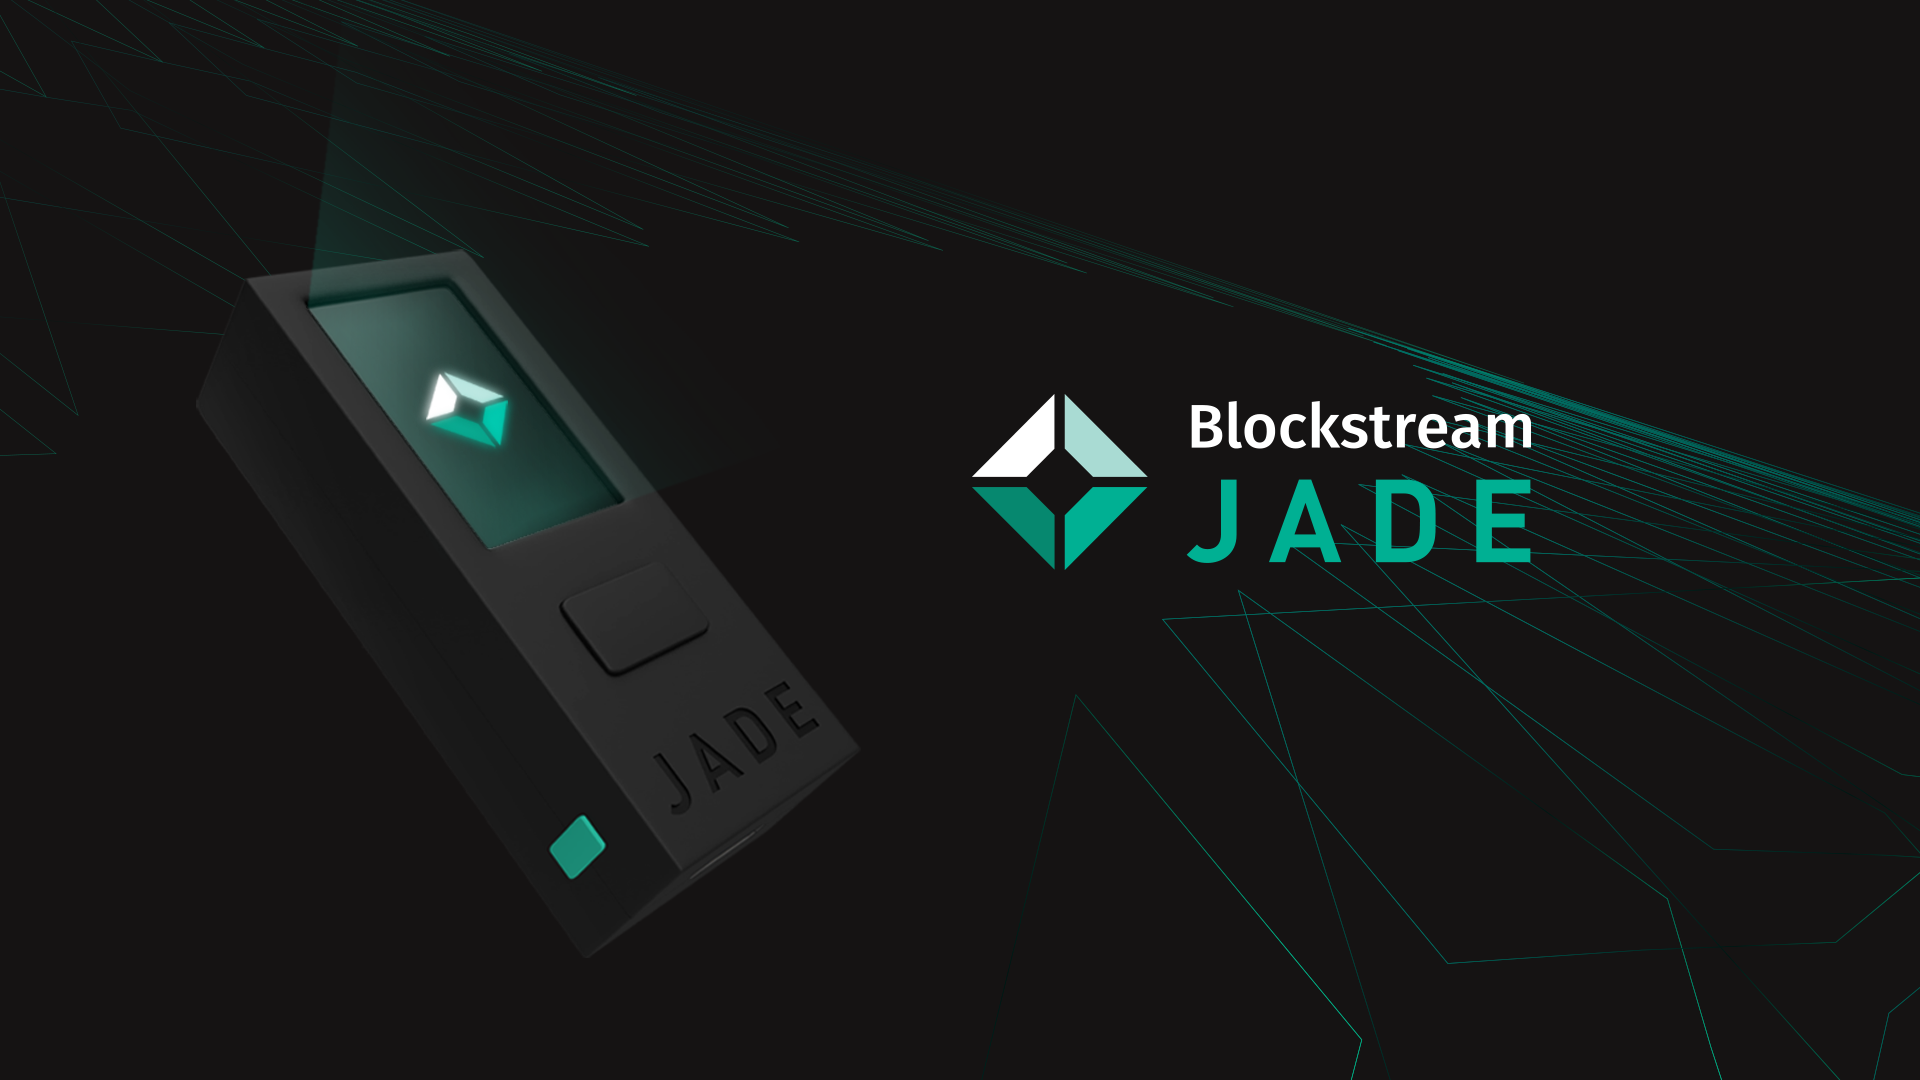 Blockstream on LinkedIn: Blockstream Jade's New Camera Activation